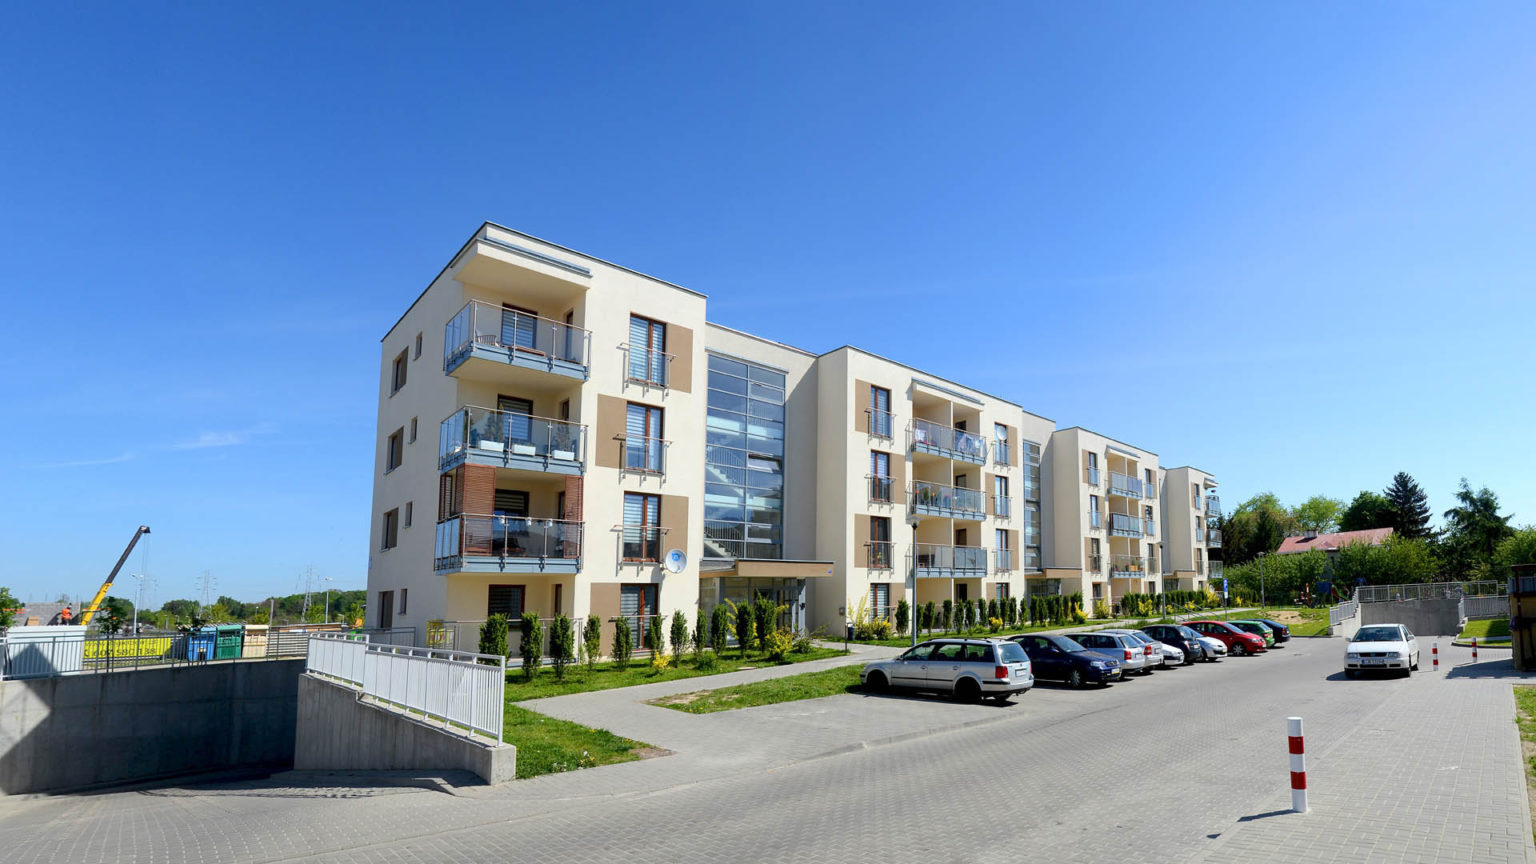 Inwestycje mieszkaniowe w Lublinie. Mieszkania na sprzedaż Willowa 2 w stanie deweloperskim.